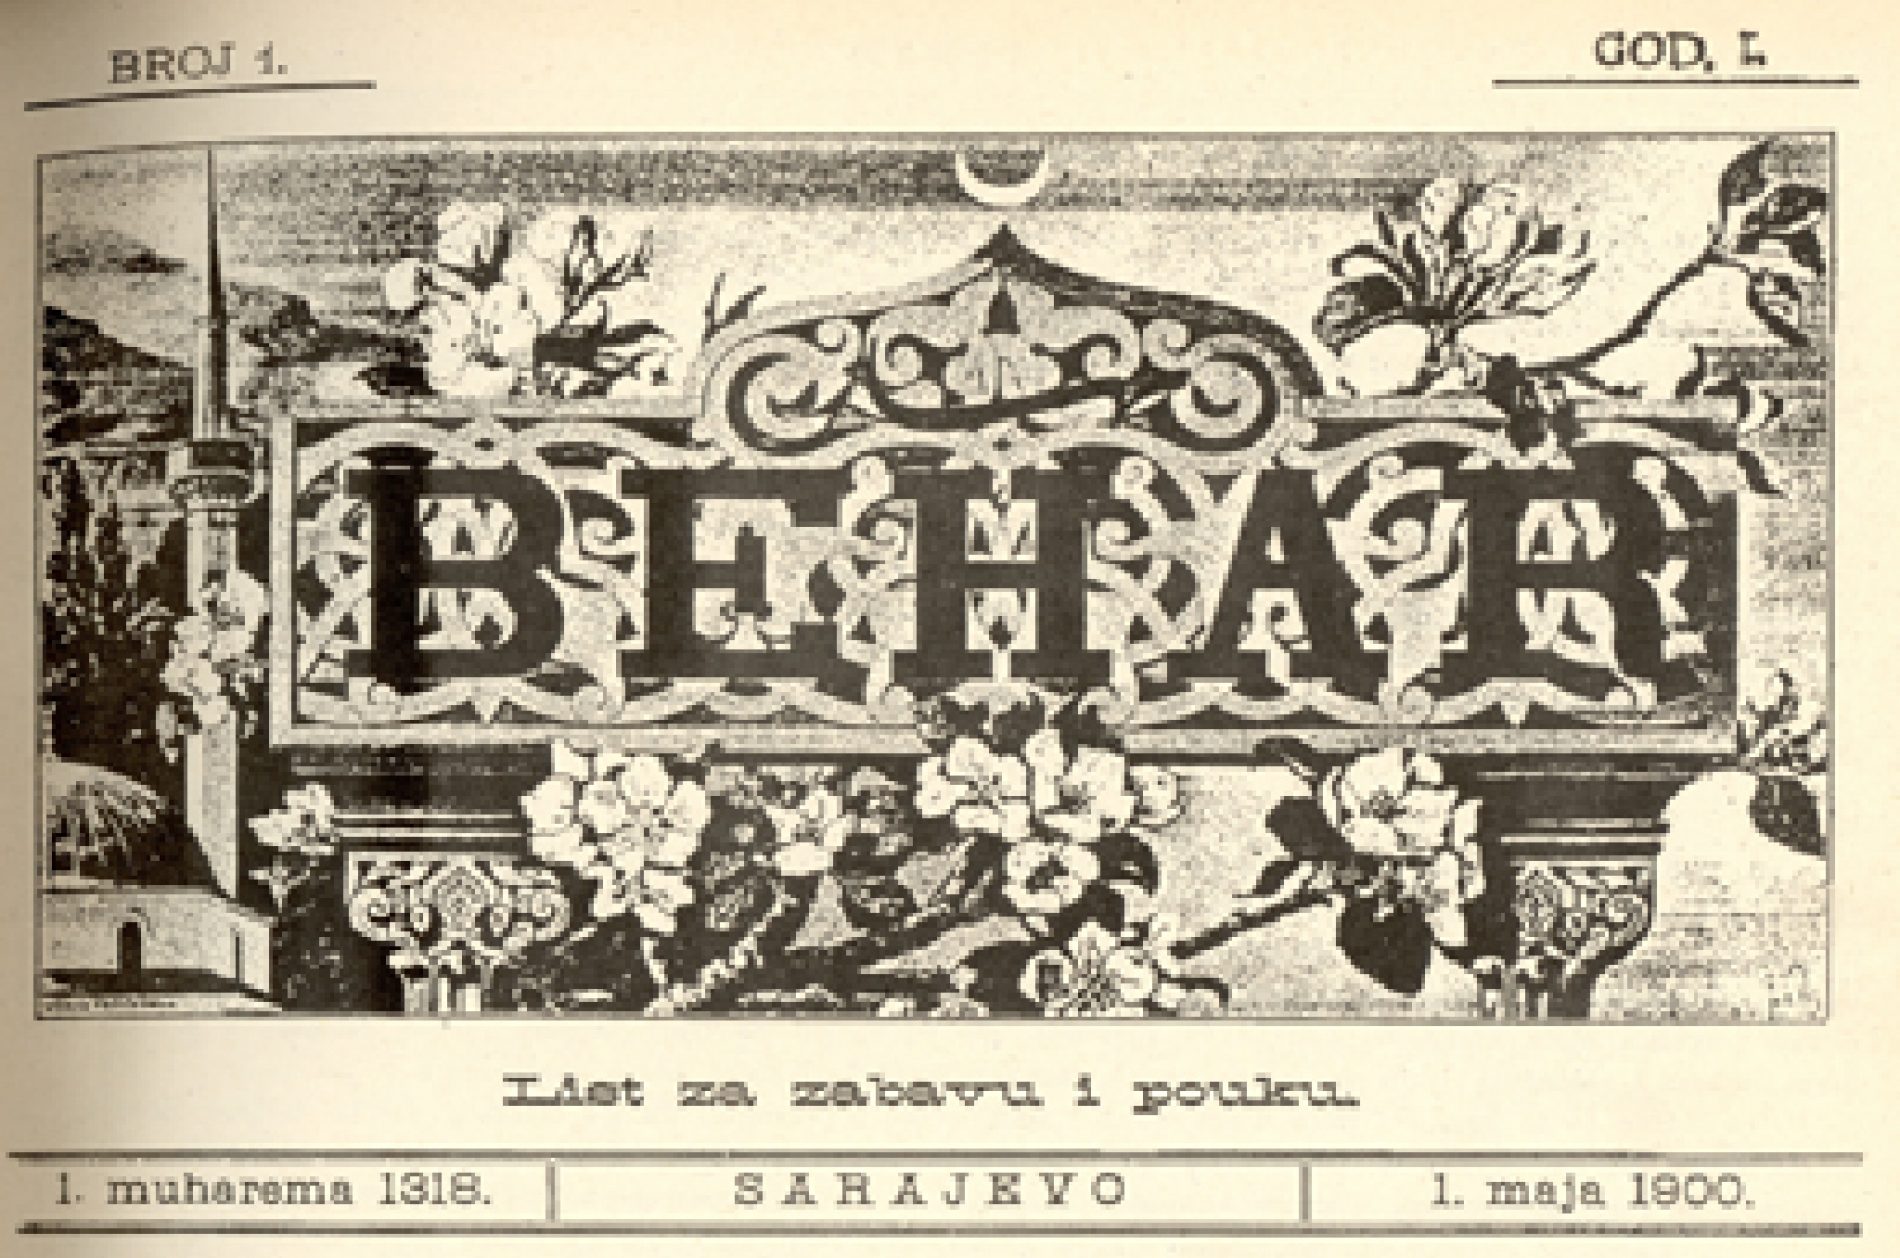 Behar, bošnjački list za pouku i zabavu počeo izlaziti 1. maja 1900. (pdf prvog broja)